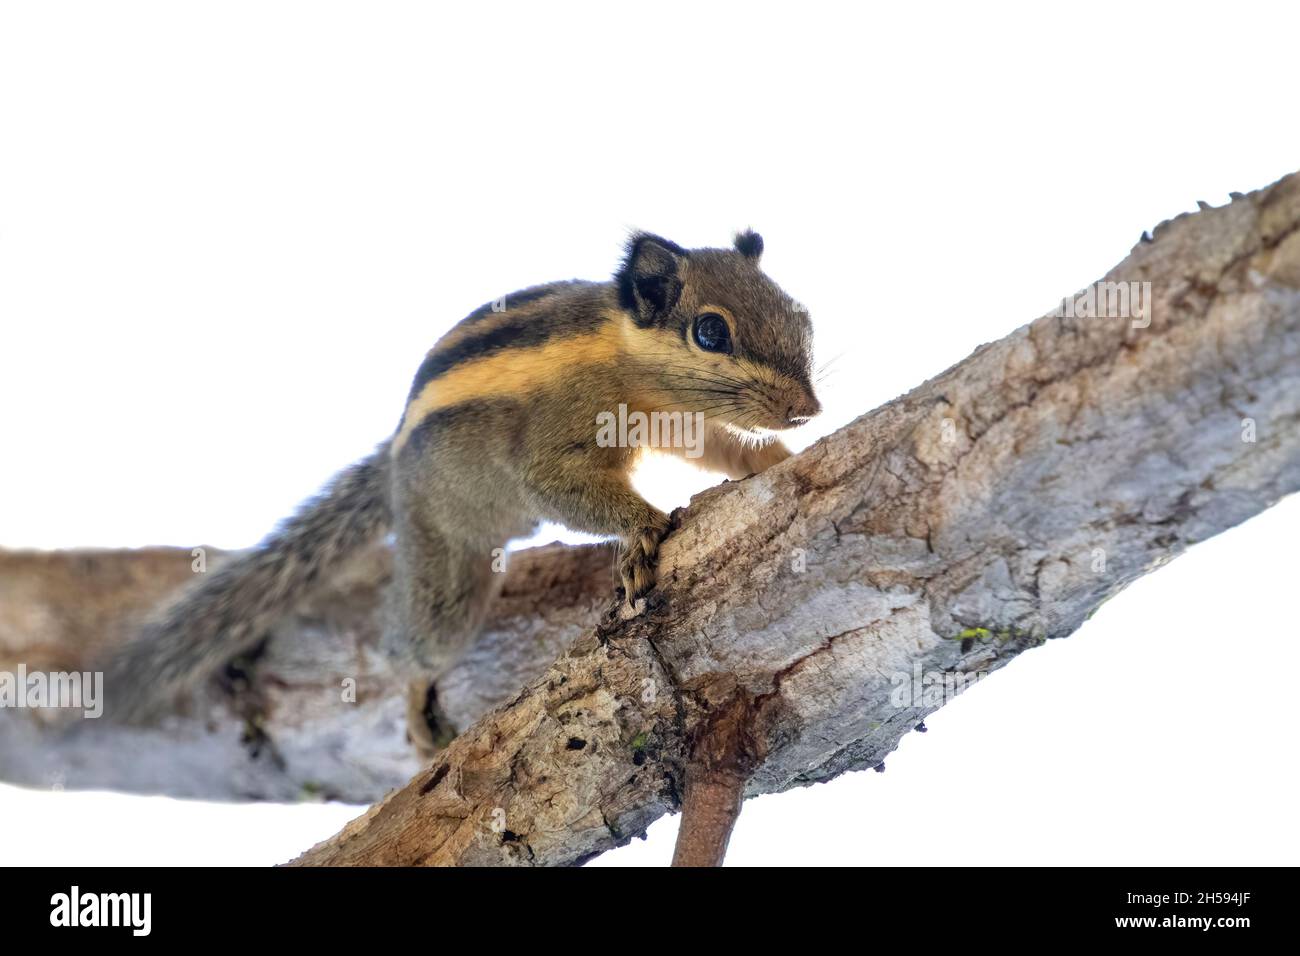 Des imags d'écureuil rayé himalayen ou d'écureuil rayé birman (Tamiops mcclellandii) sur un arbre.Animaux sauvages. Banque D'Images